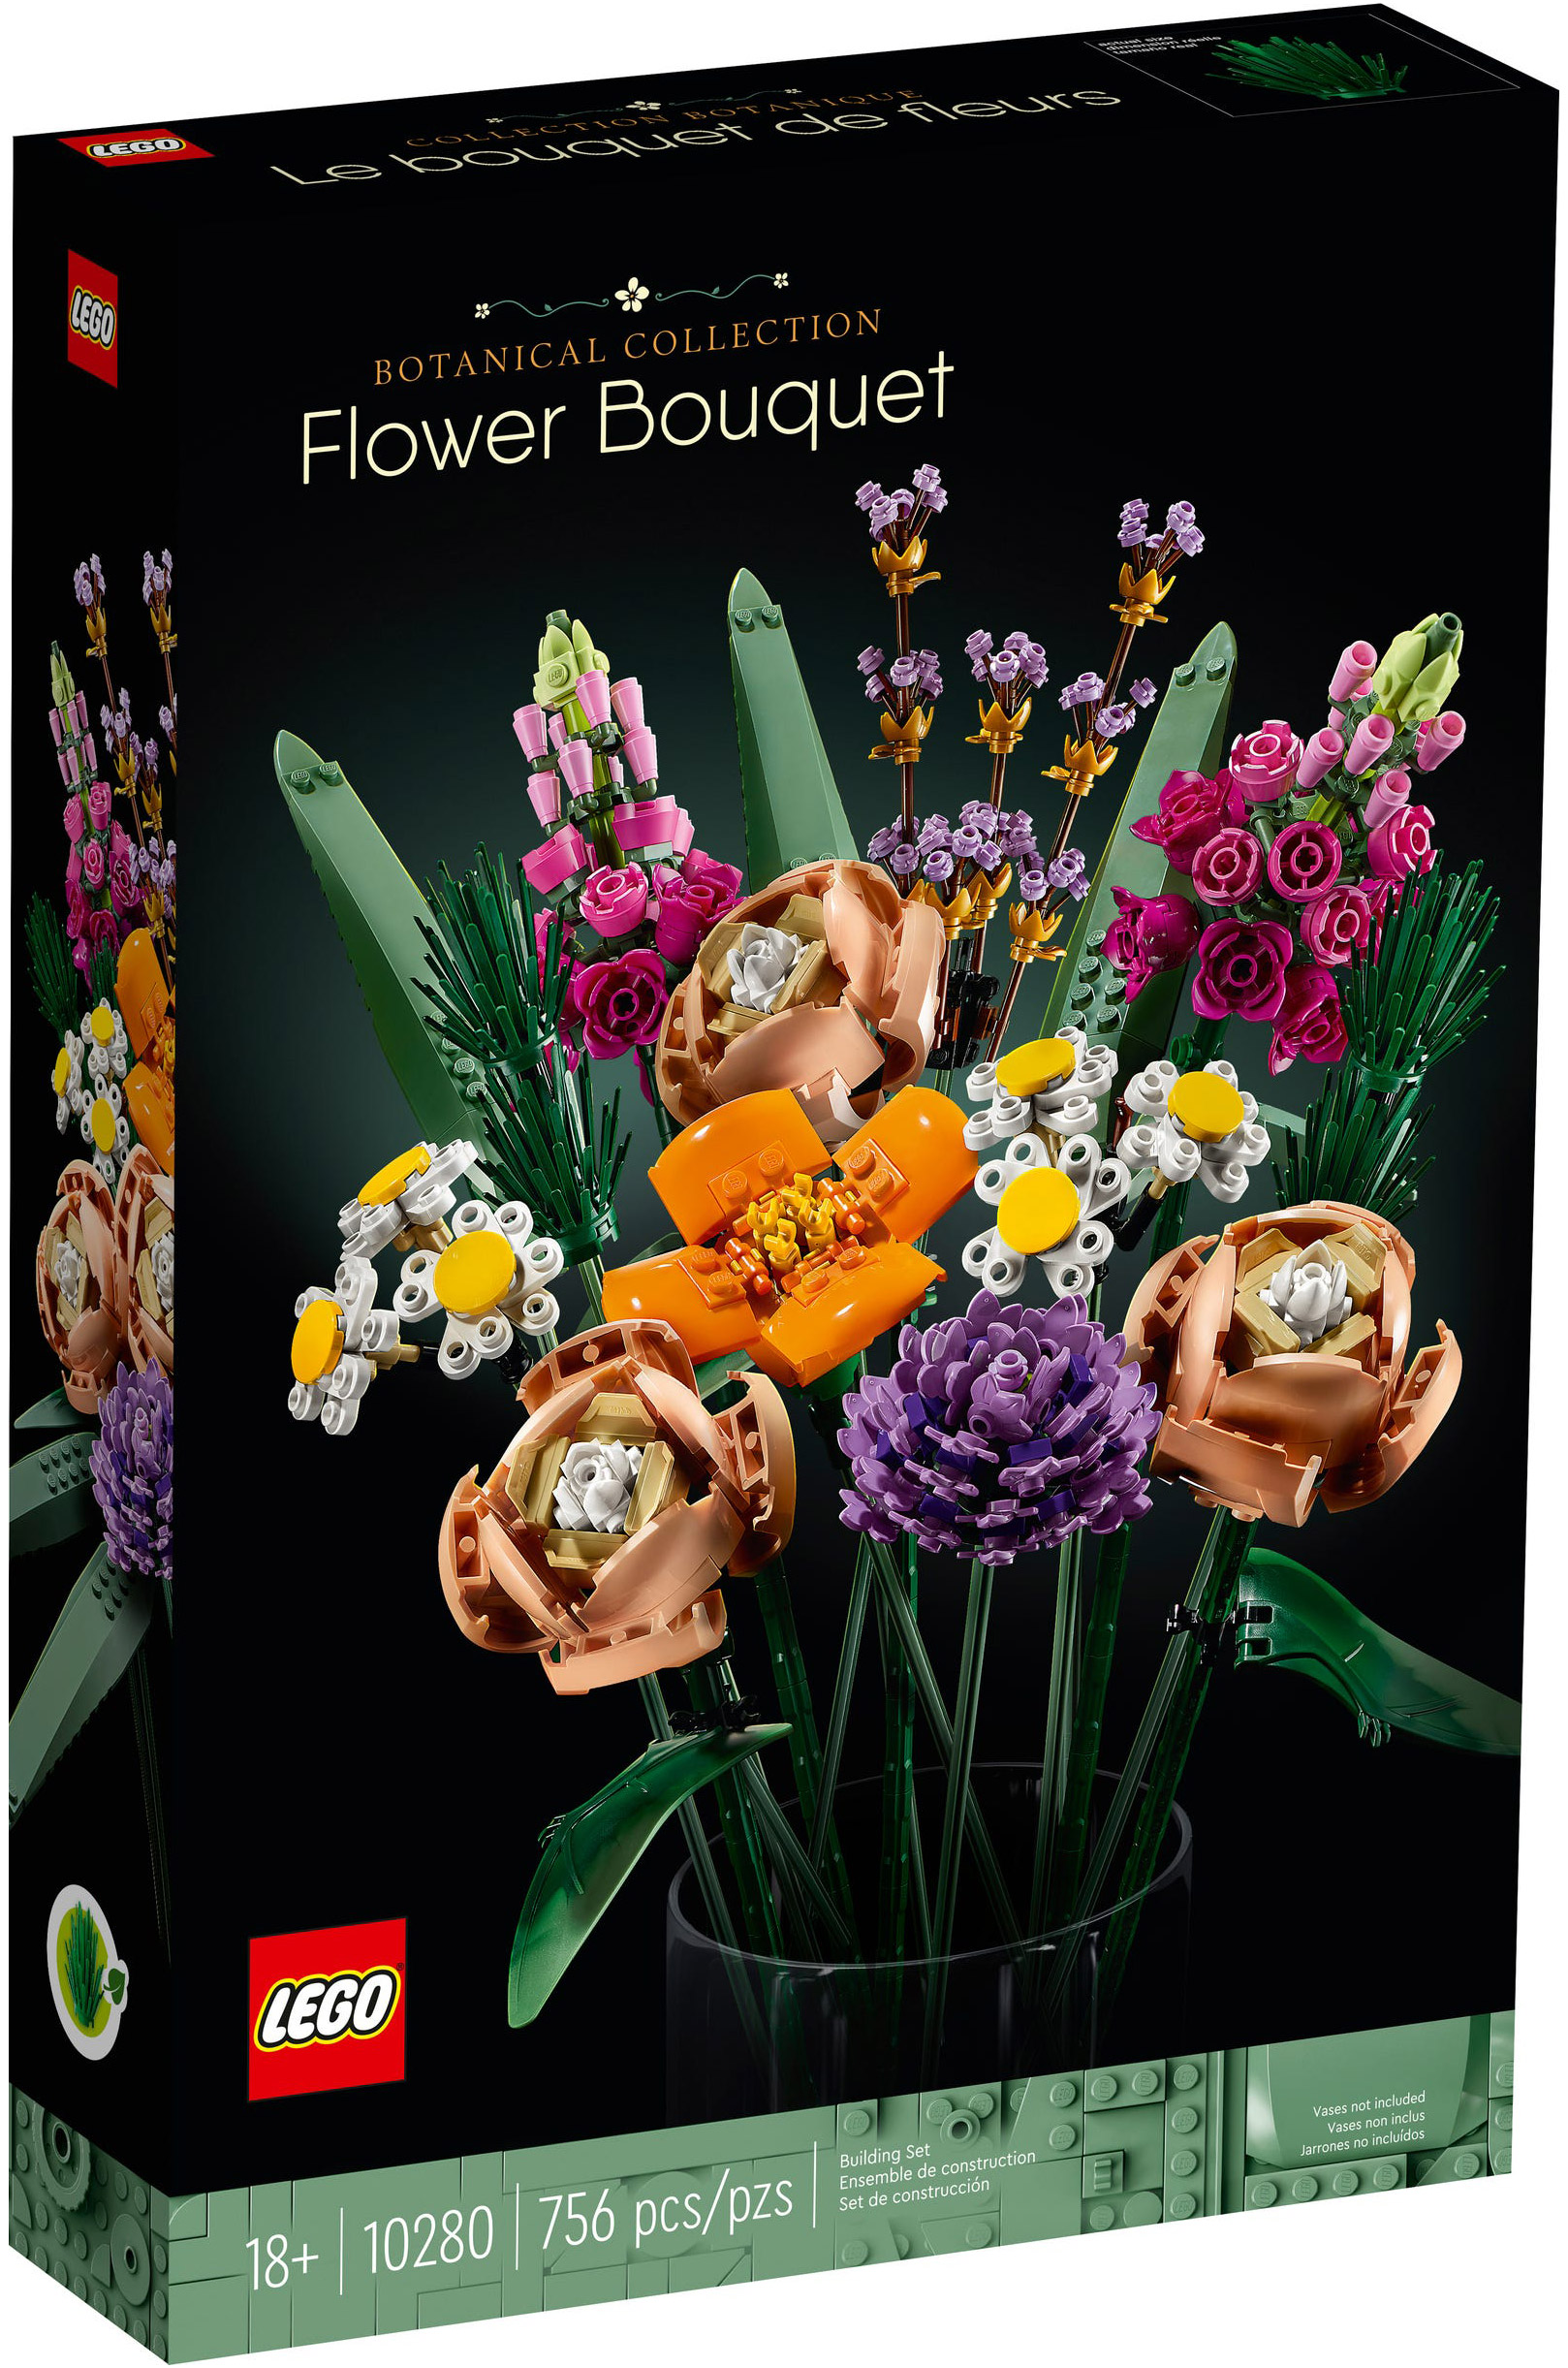 LEGO Creator 10280 pas cher, Bouquet de fleurs